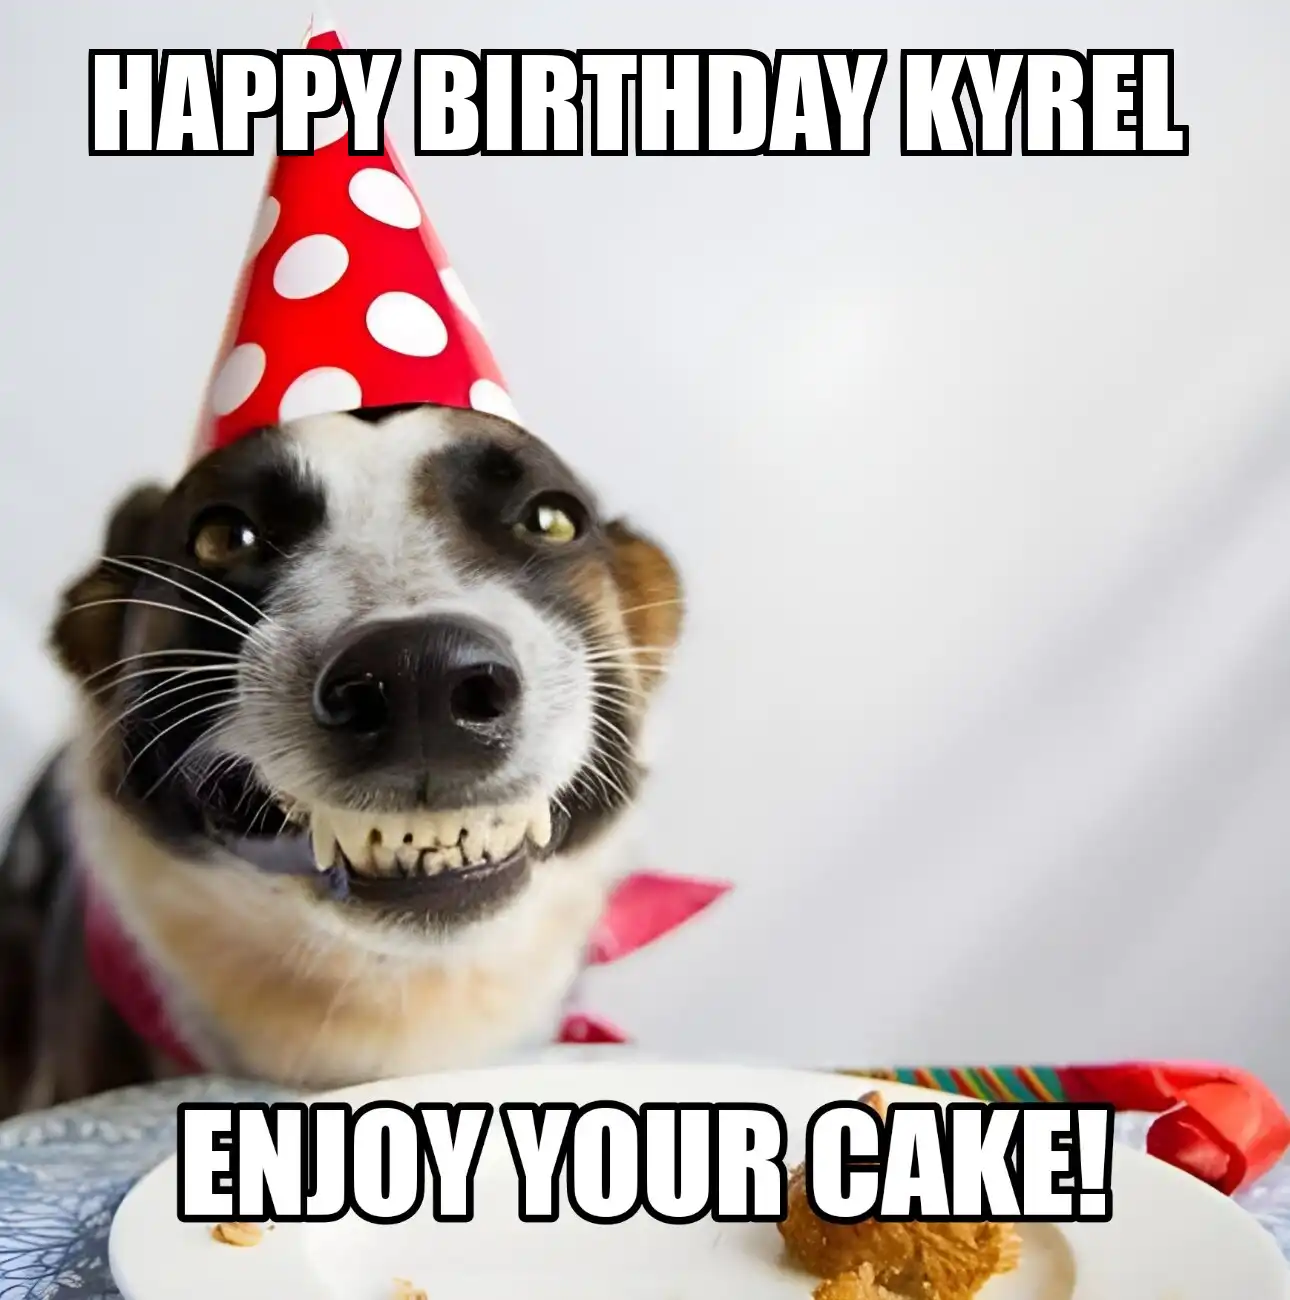 Happy Birthday Kyrel Enjoy Your Cake Dog Meme